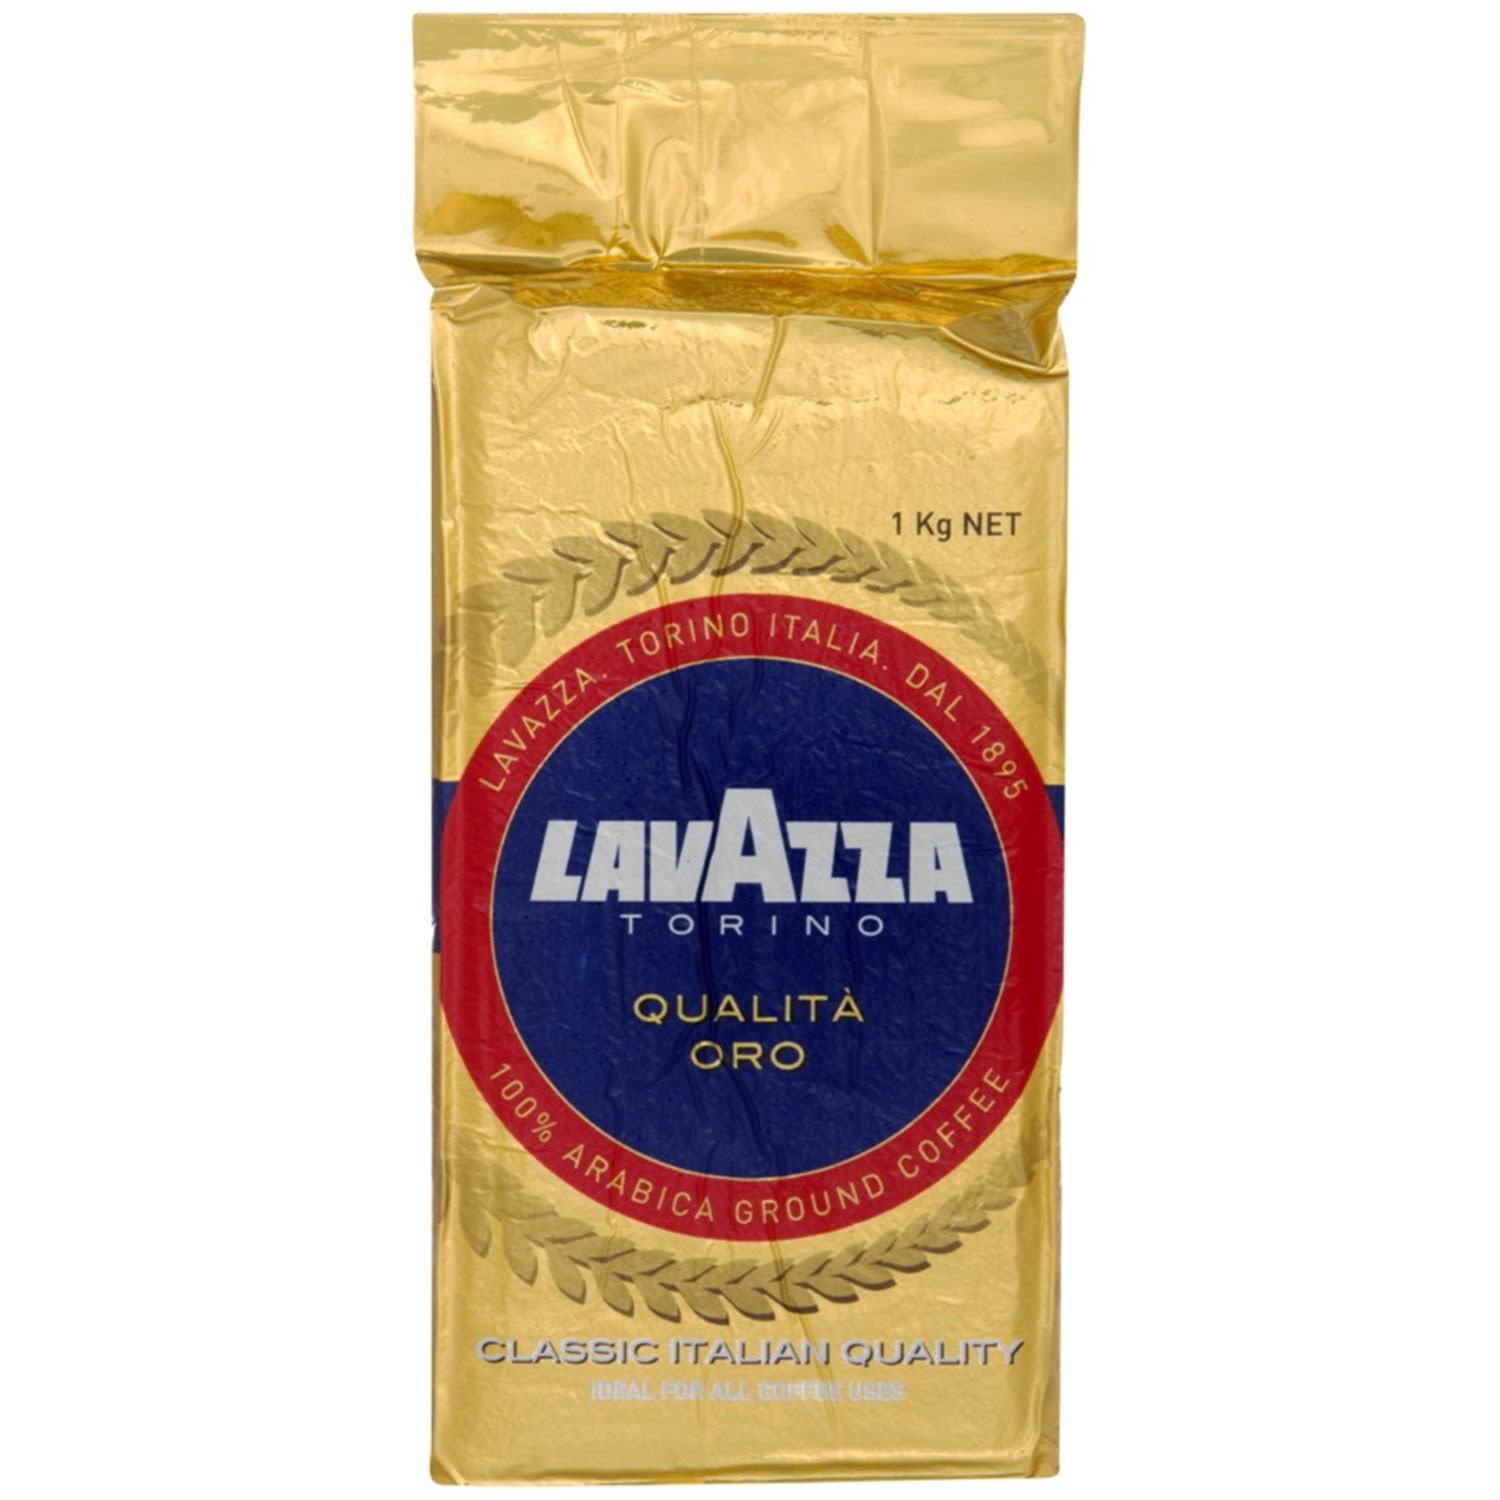 Lavazza Qualita Oro Ground Coffee, 1 Kilogram